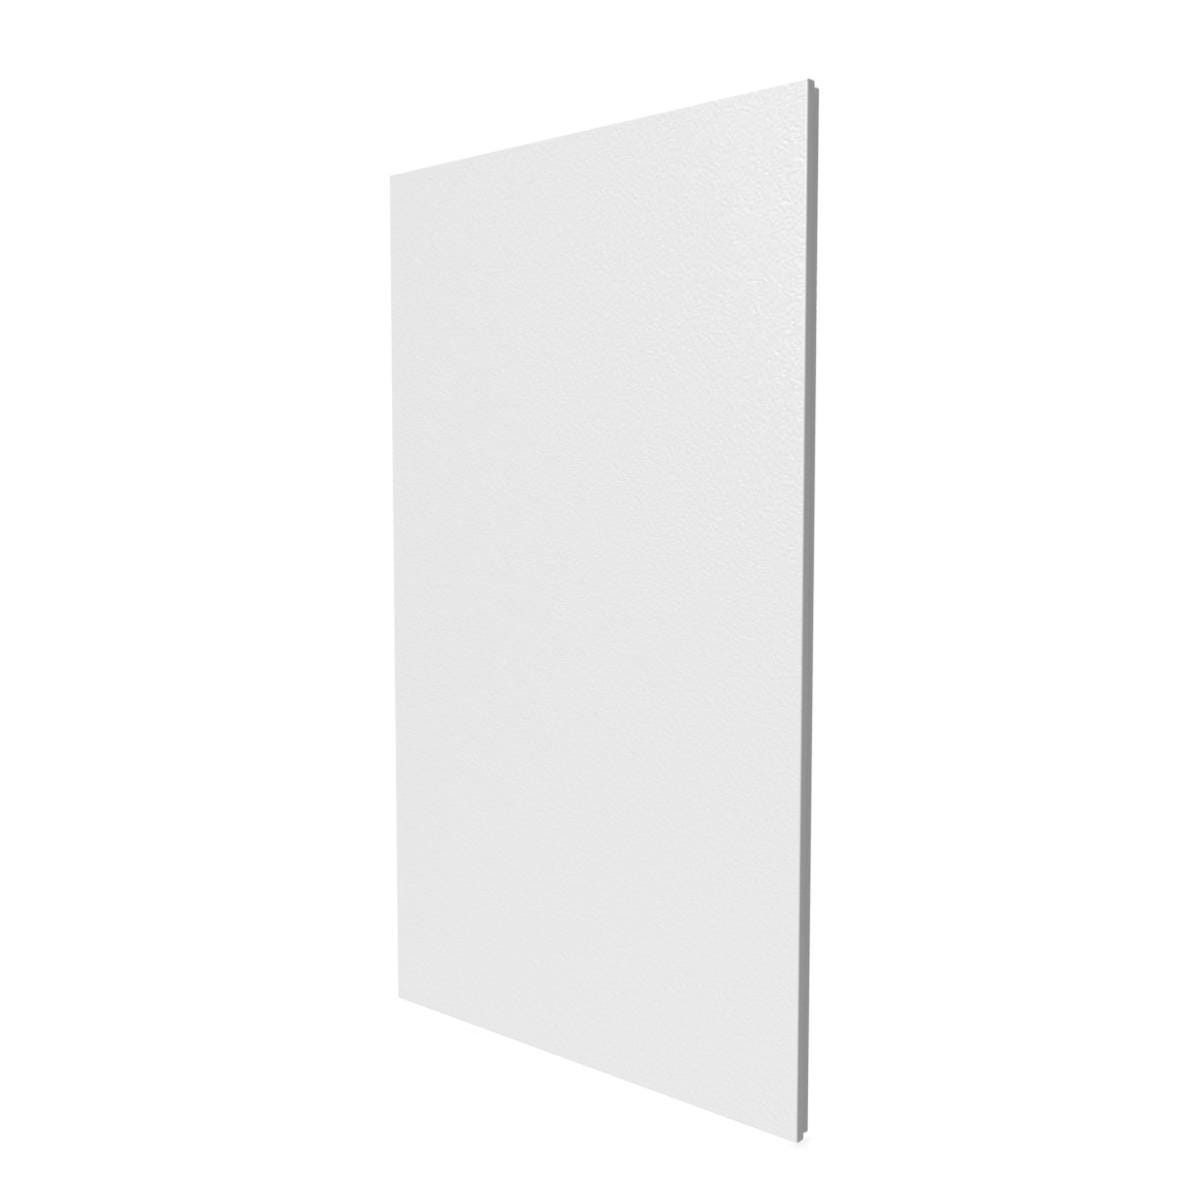 Porte en blanc pour bac encastré 2x13 modules - Finition saillie - H. hors-tout 970 mm 0